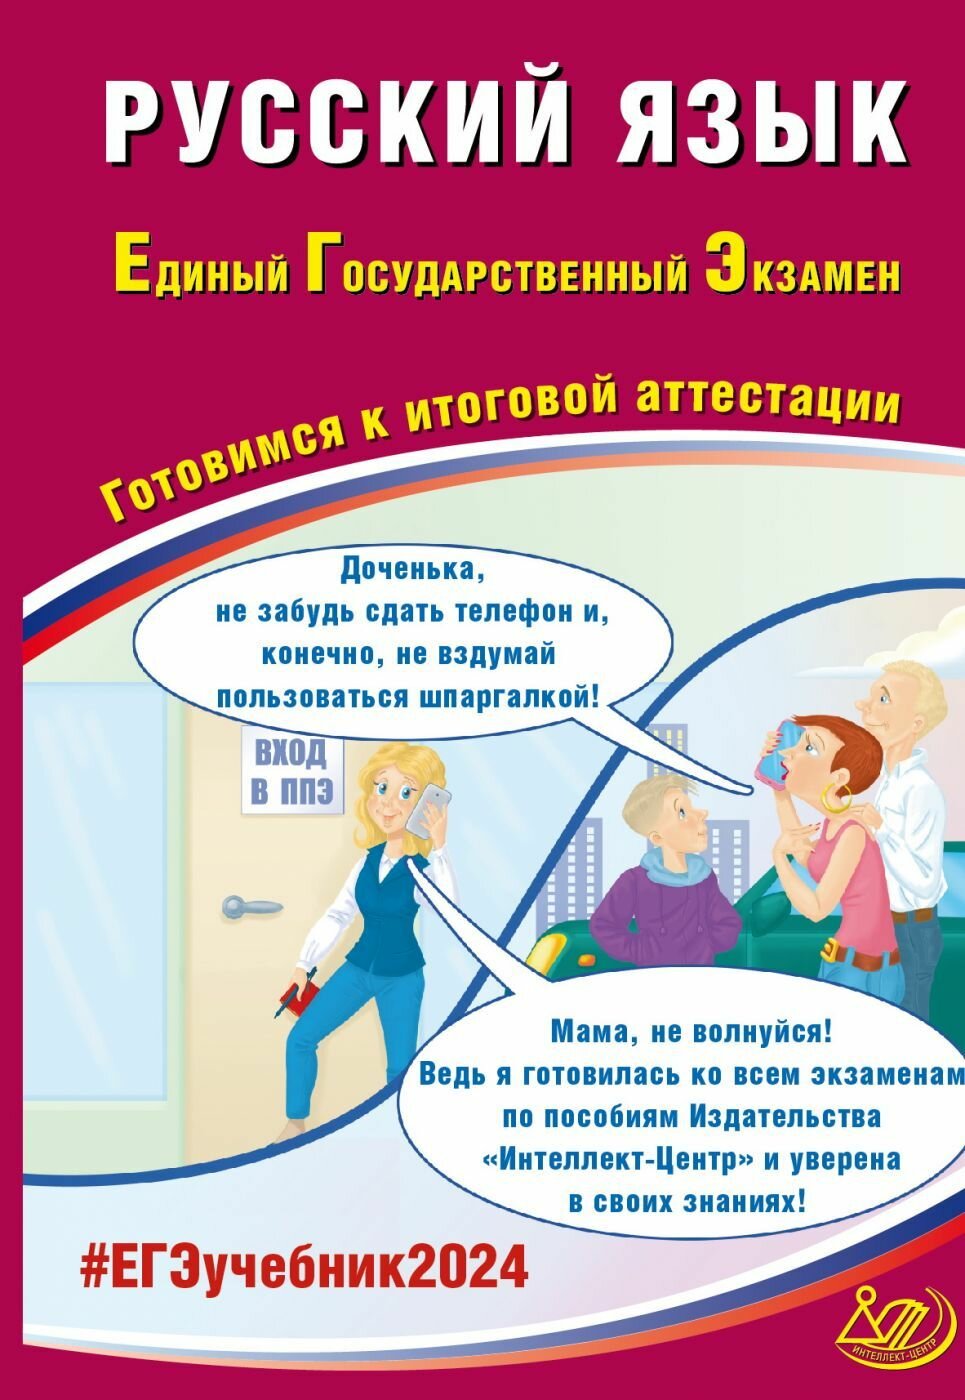 ЕГЭ 2023 Русский язык. Готовимся к итоговой аттестации - фото №2